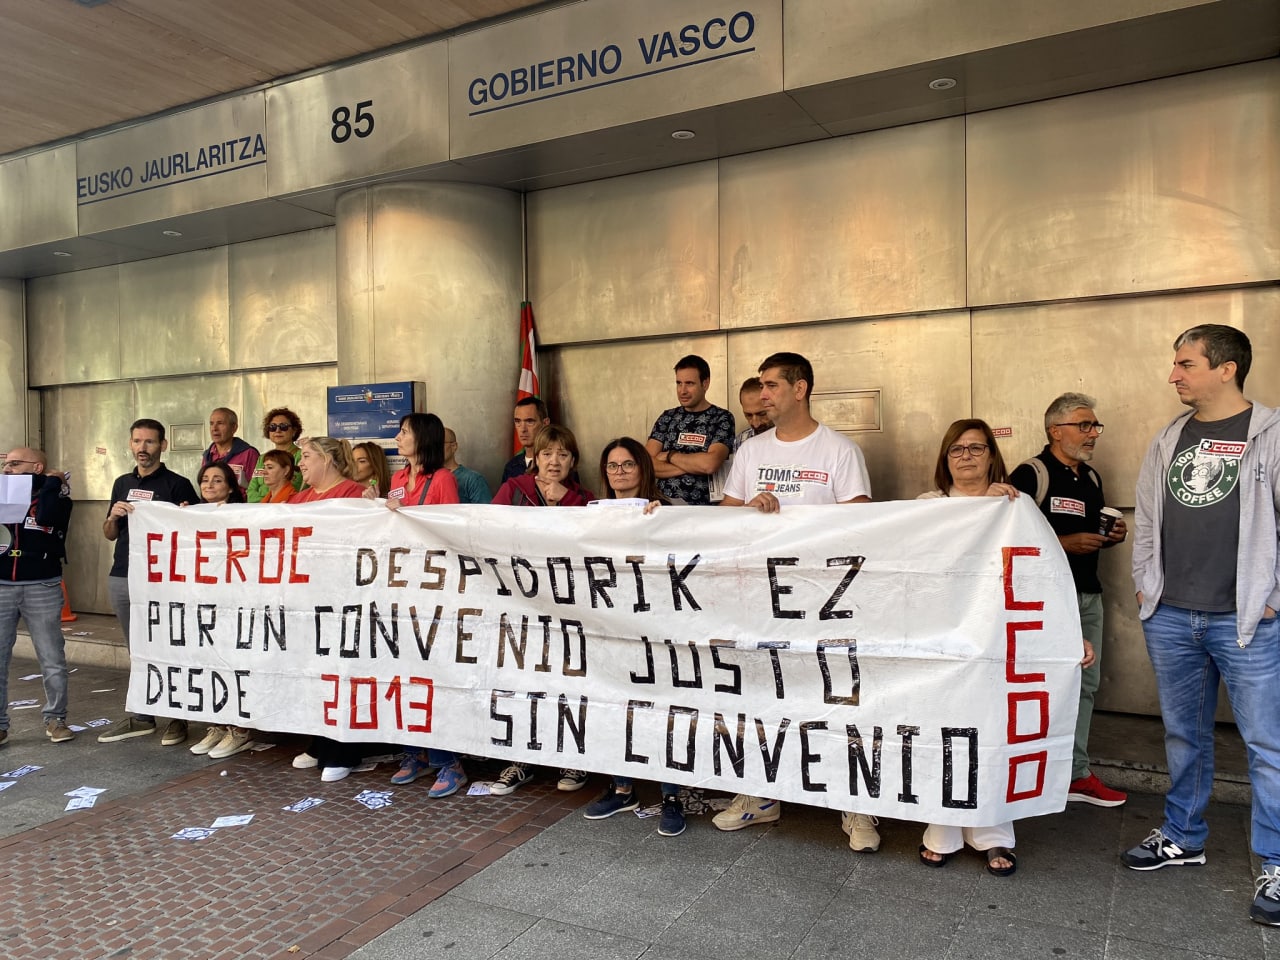 El Gobierno Vasco habla de pactos de país mientras es incapaz de garantizar unas condiciones dignas a las trabajadoras encargadas de la limpieza de sus oficinas.